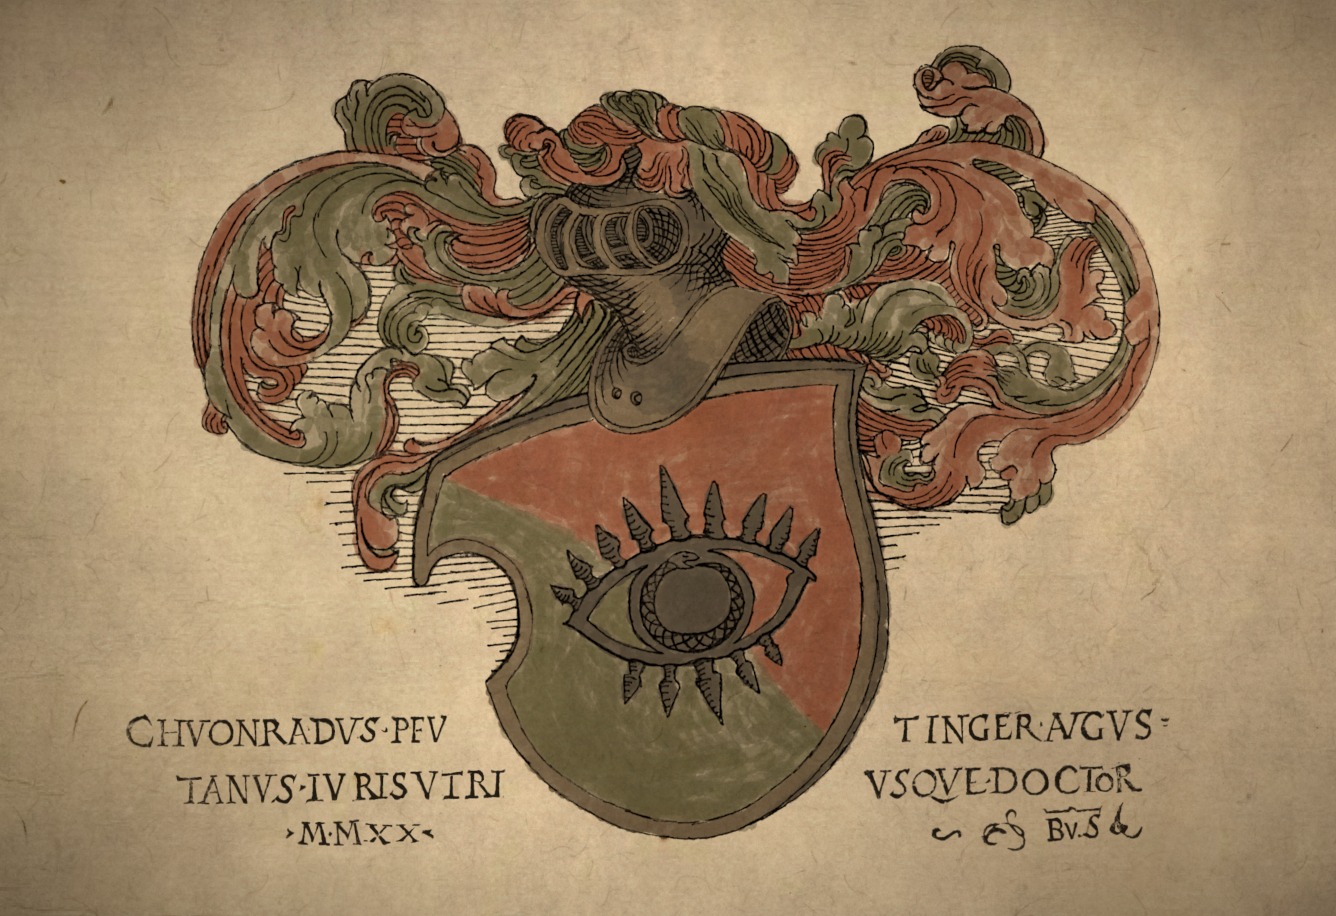 Custom heraldic medieval european coat-of-arms in engraved style.